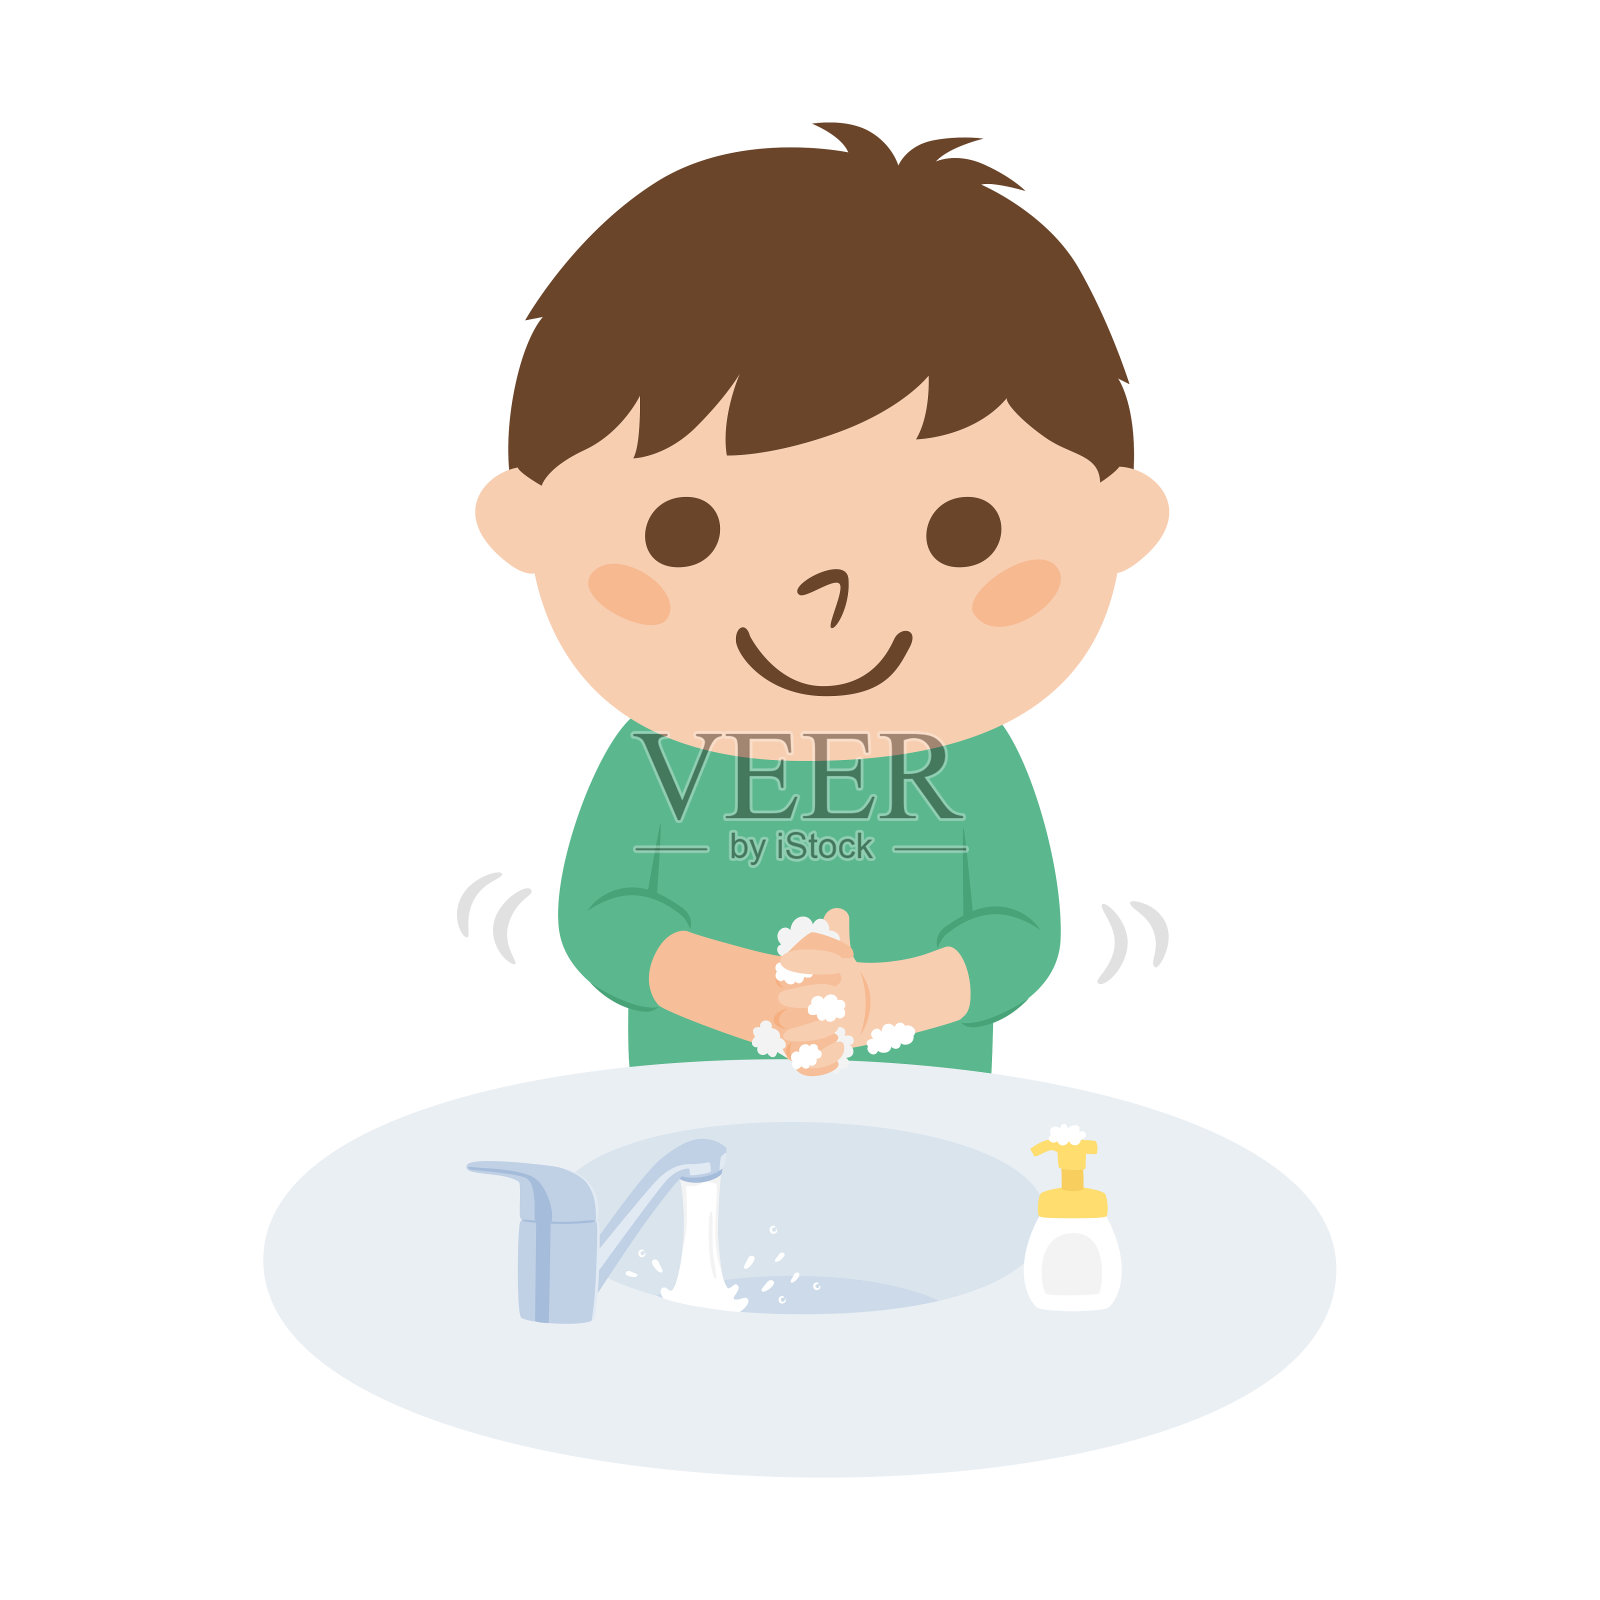 疾病预防说明。一个男孩用肥皂洗手以避免感冒。设计元素图片